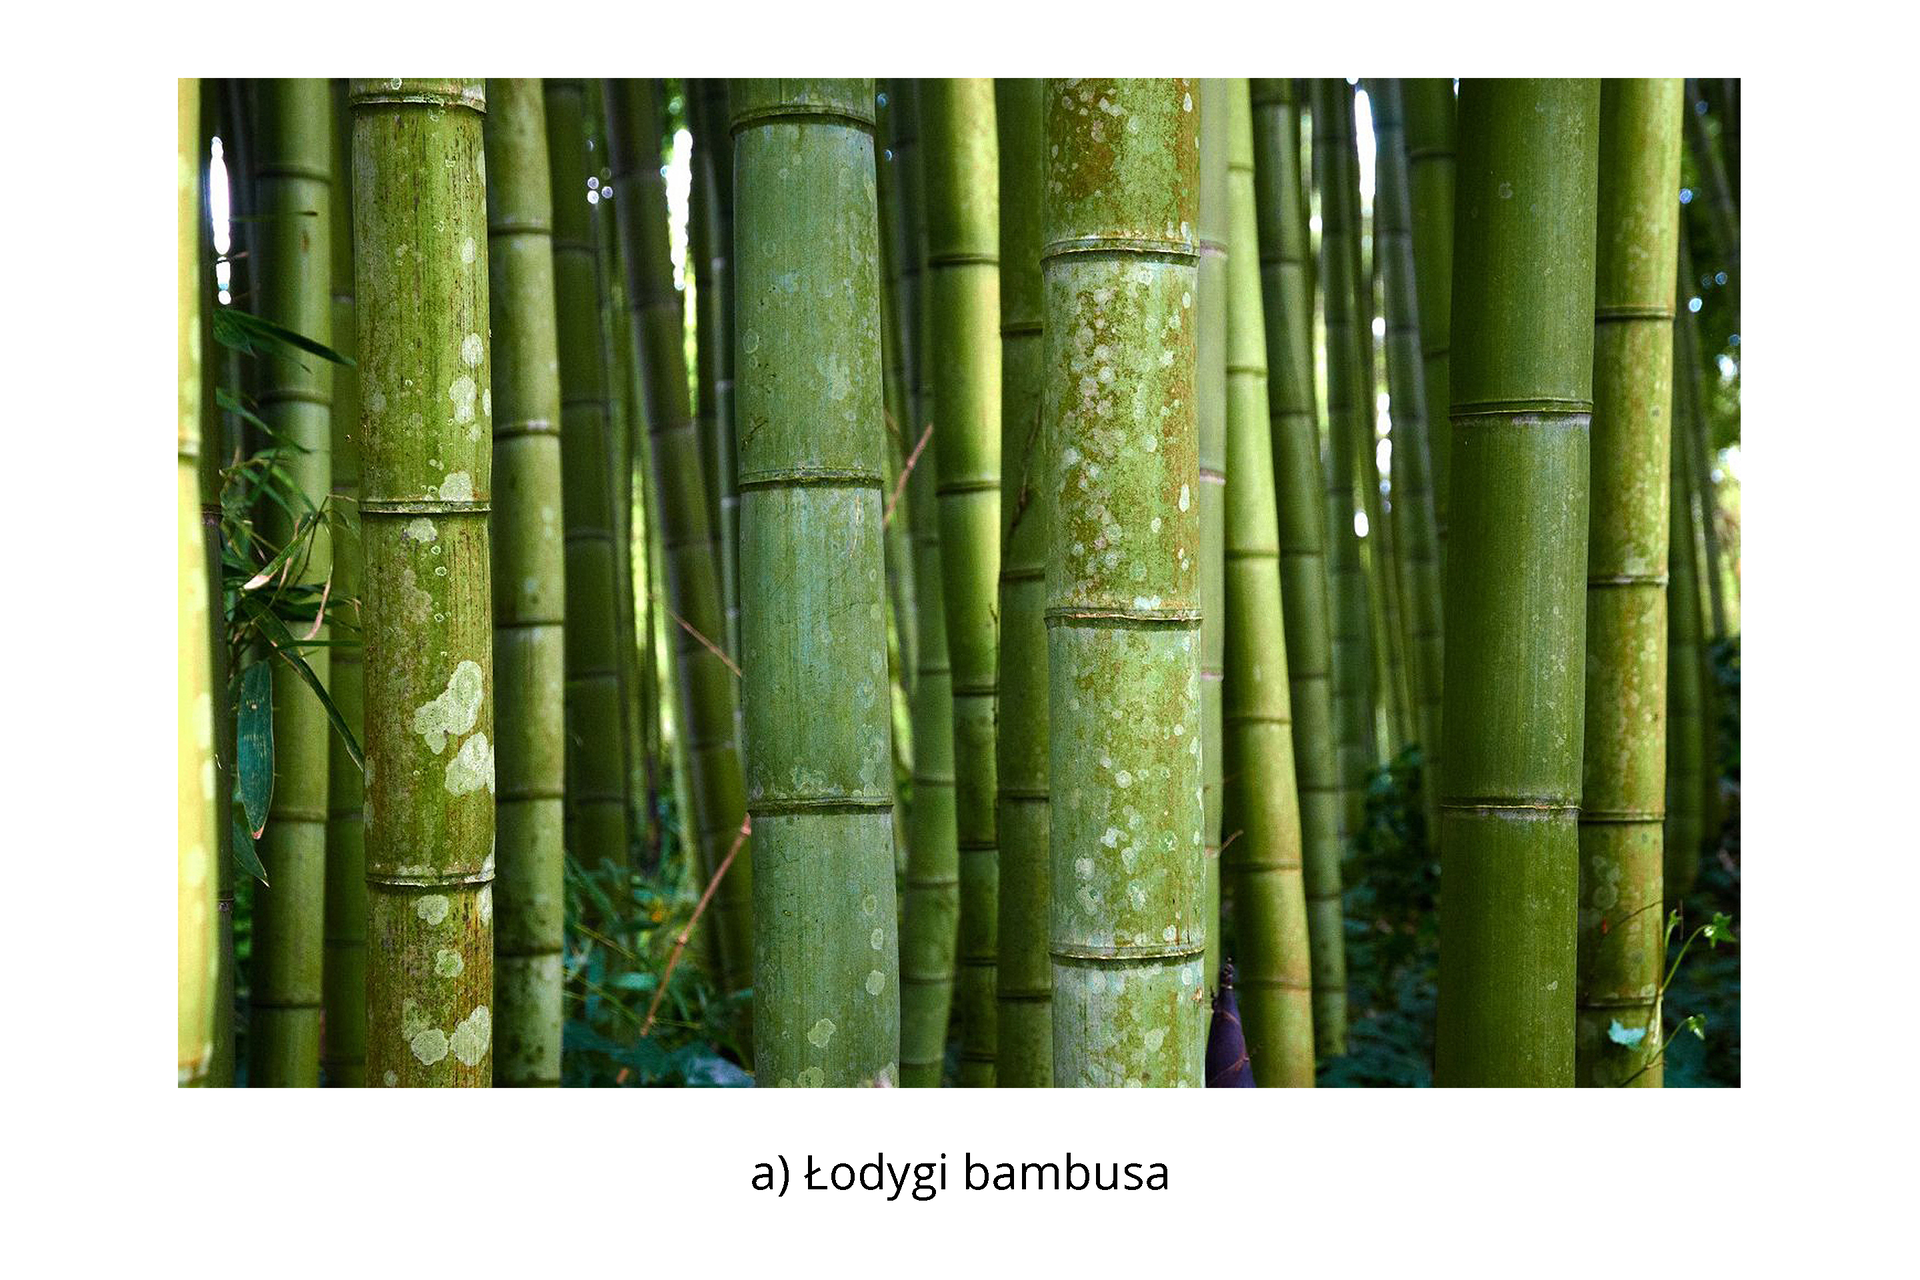 Włókna bambusowe są wytwarzane z celulozy uzyskiwanej z pędów bambusa. W podobny sposób wytwarza się celulozę z drzew (świerku, sosny, buku) i wykorzystuje się ją do produkcji przędzy wiskozowej